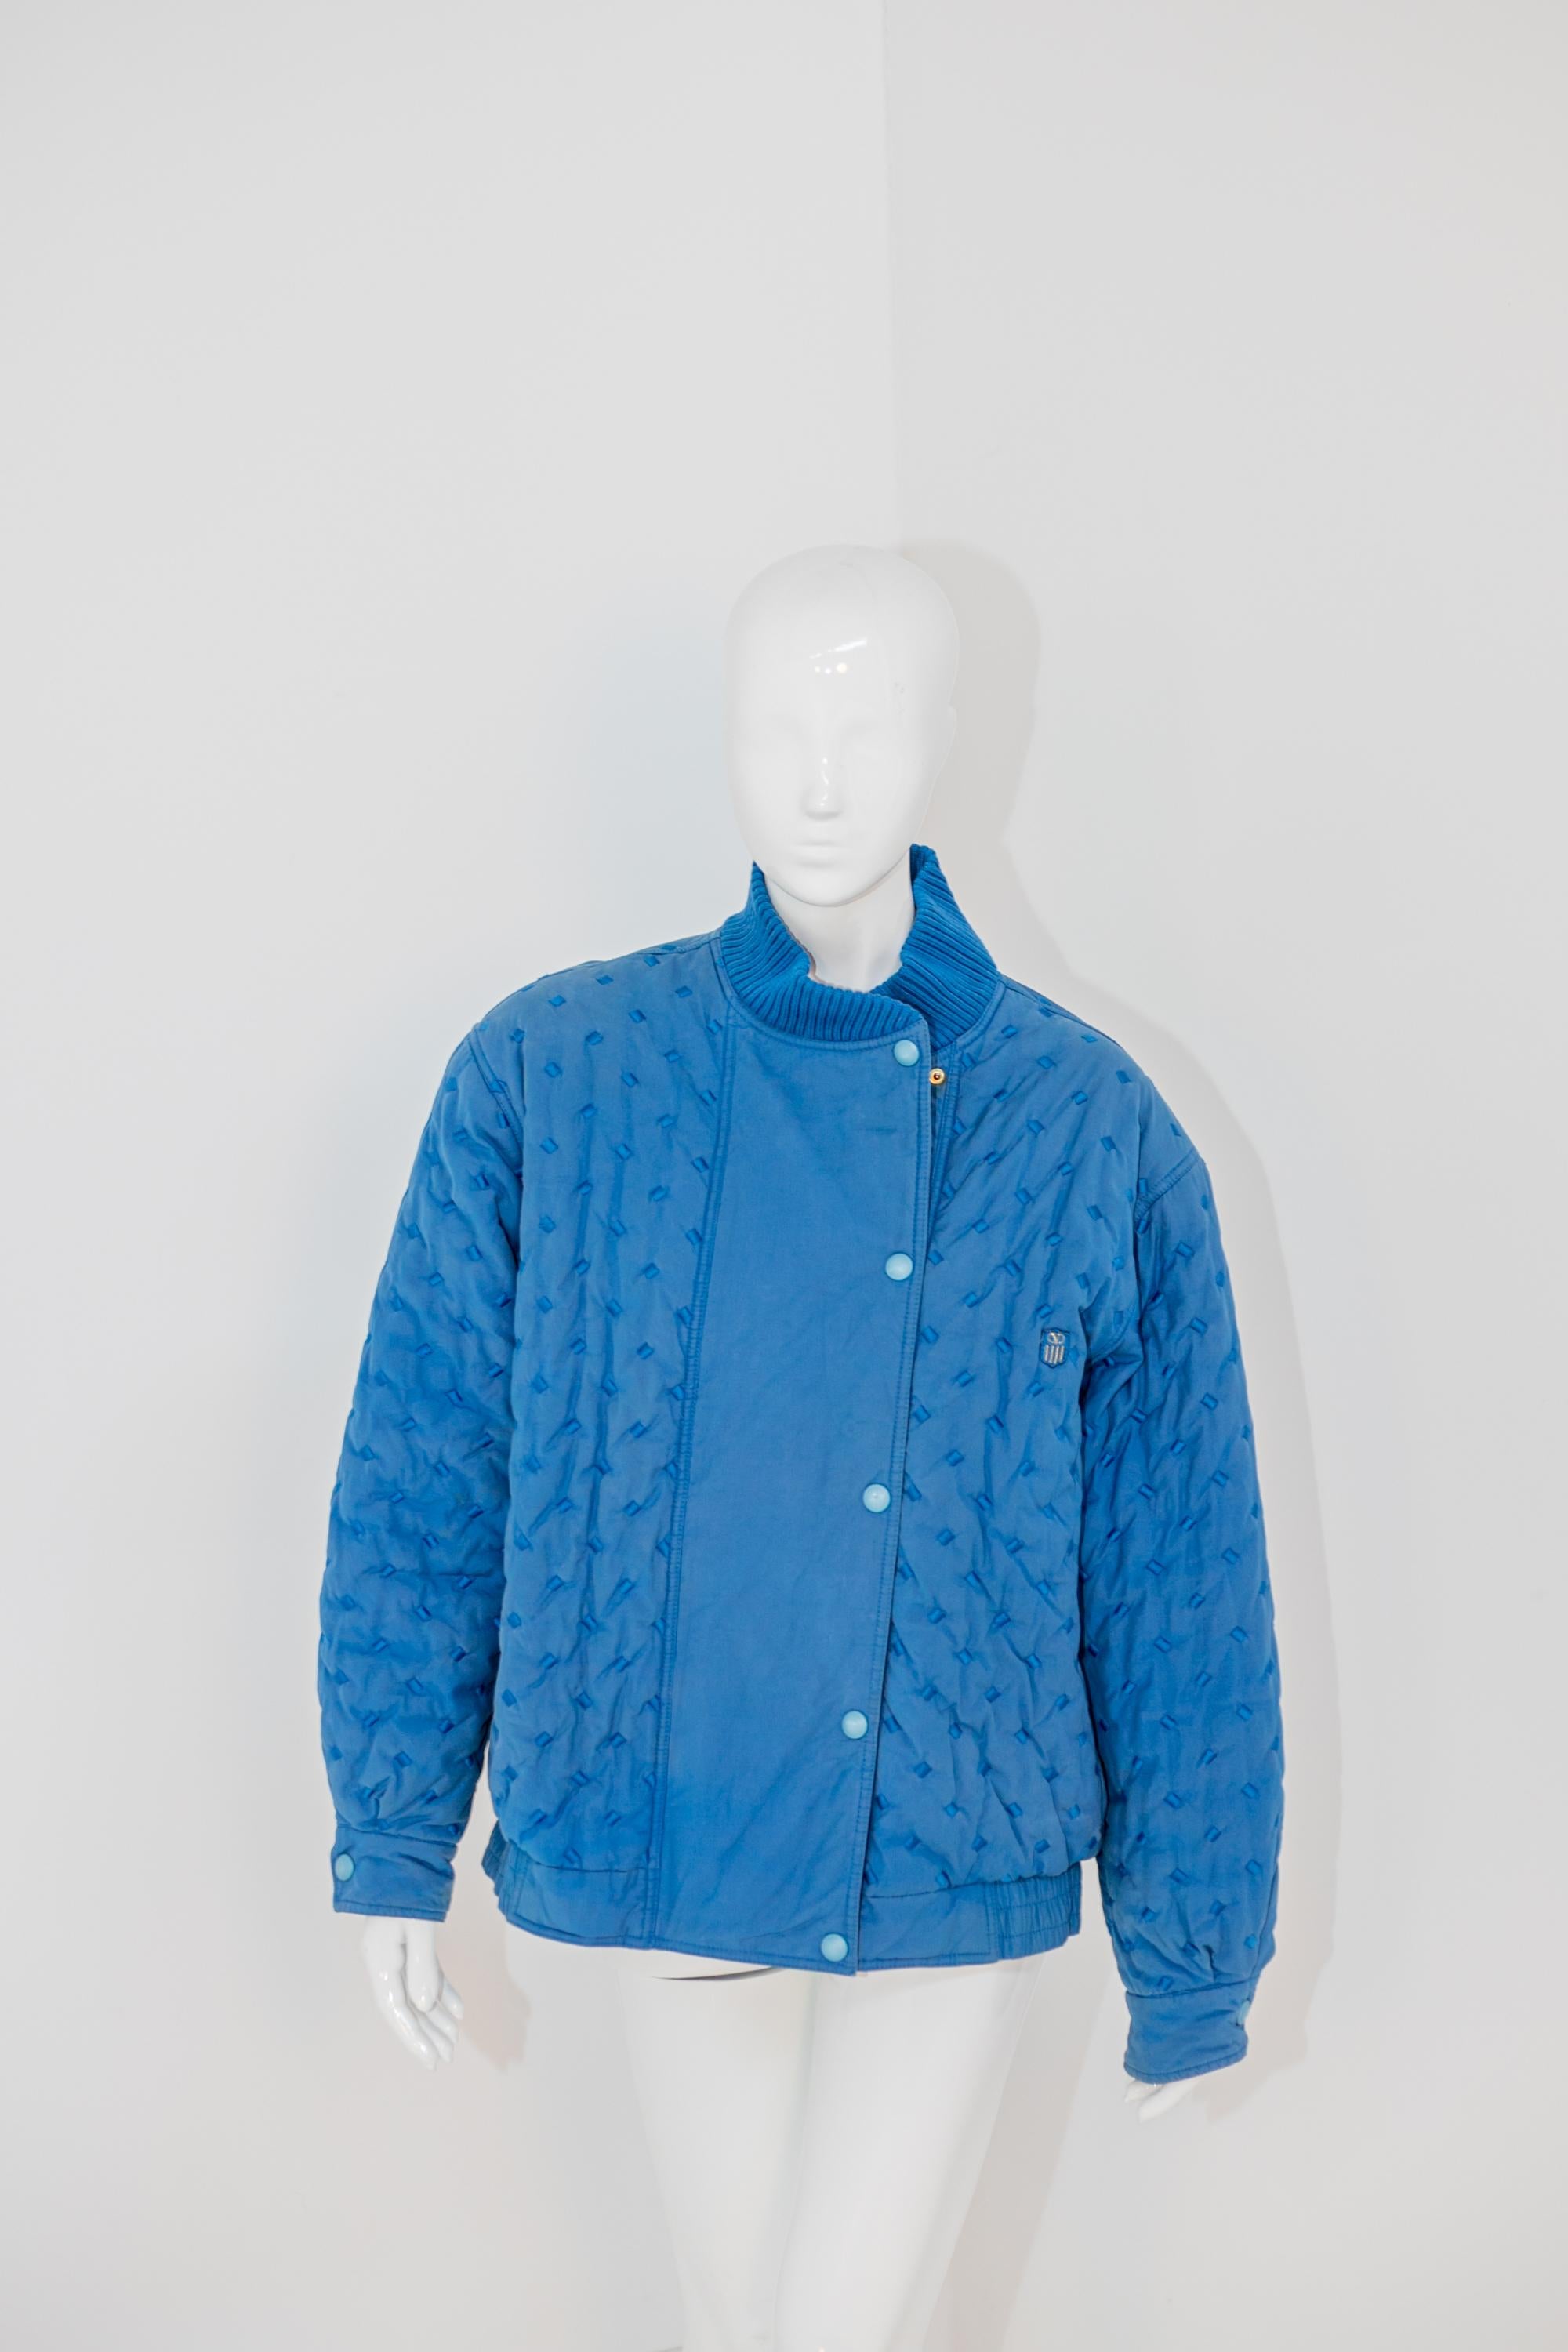 Valentino Vintage Blue Cotton Bomber Jacket For Sale 8